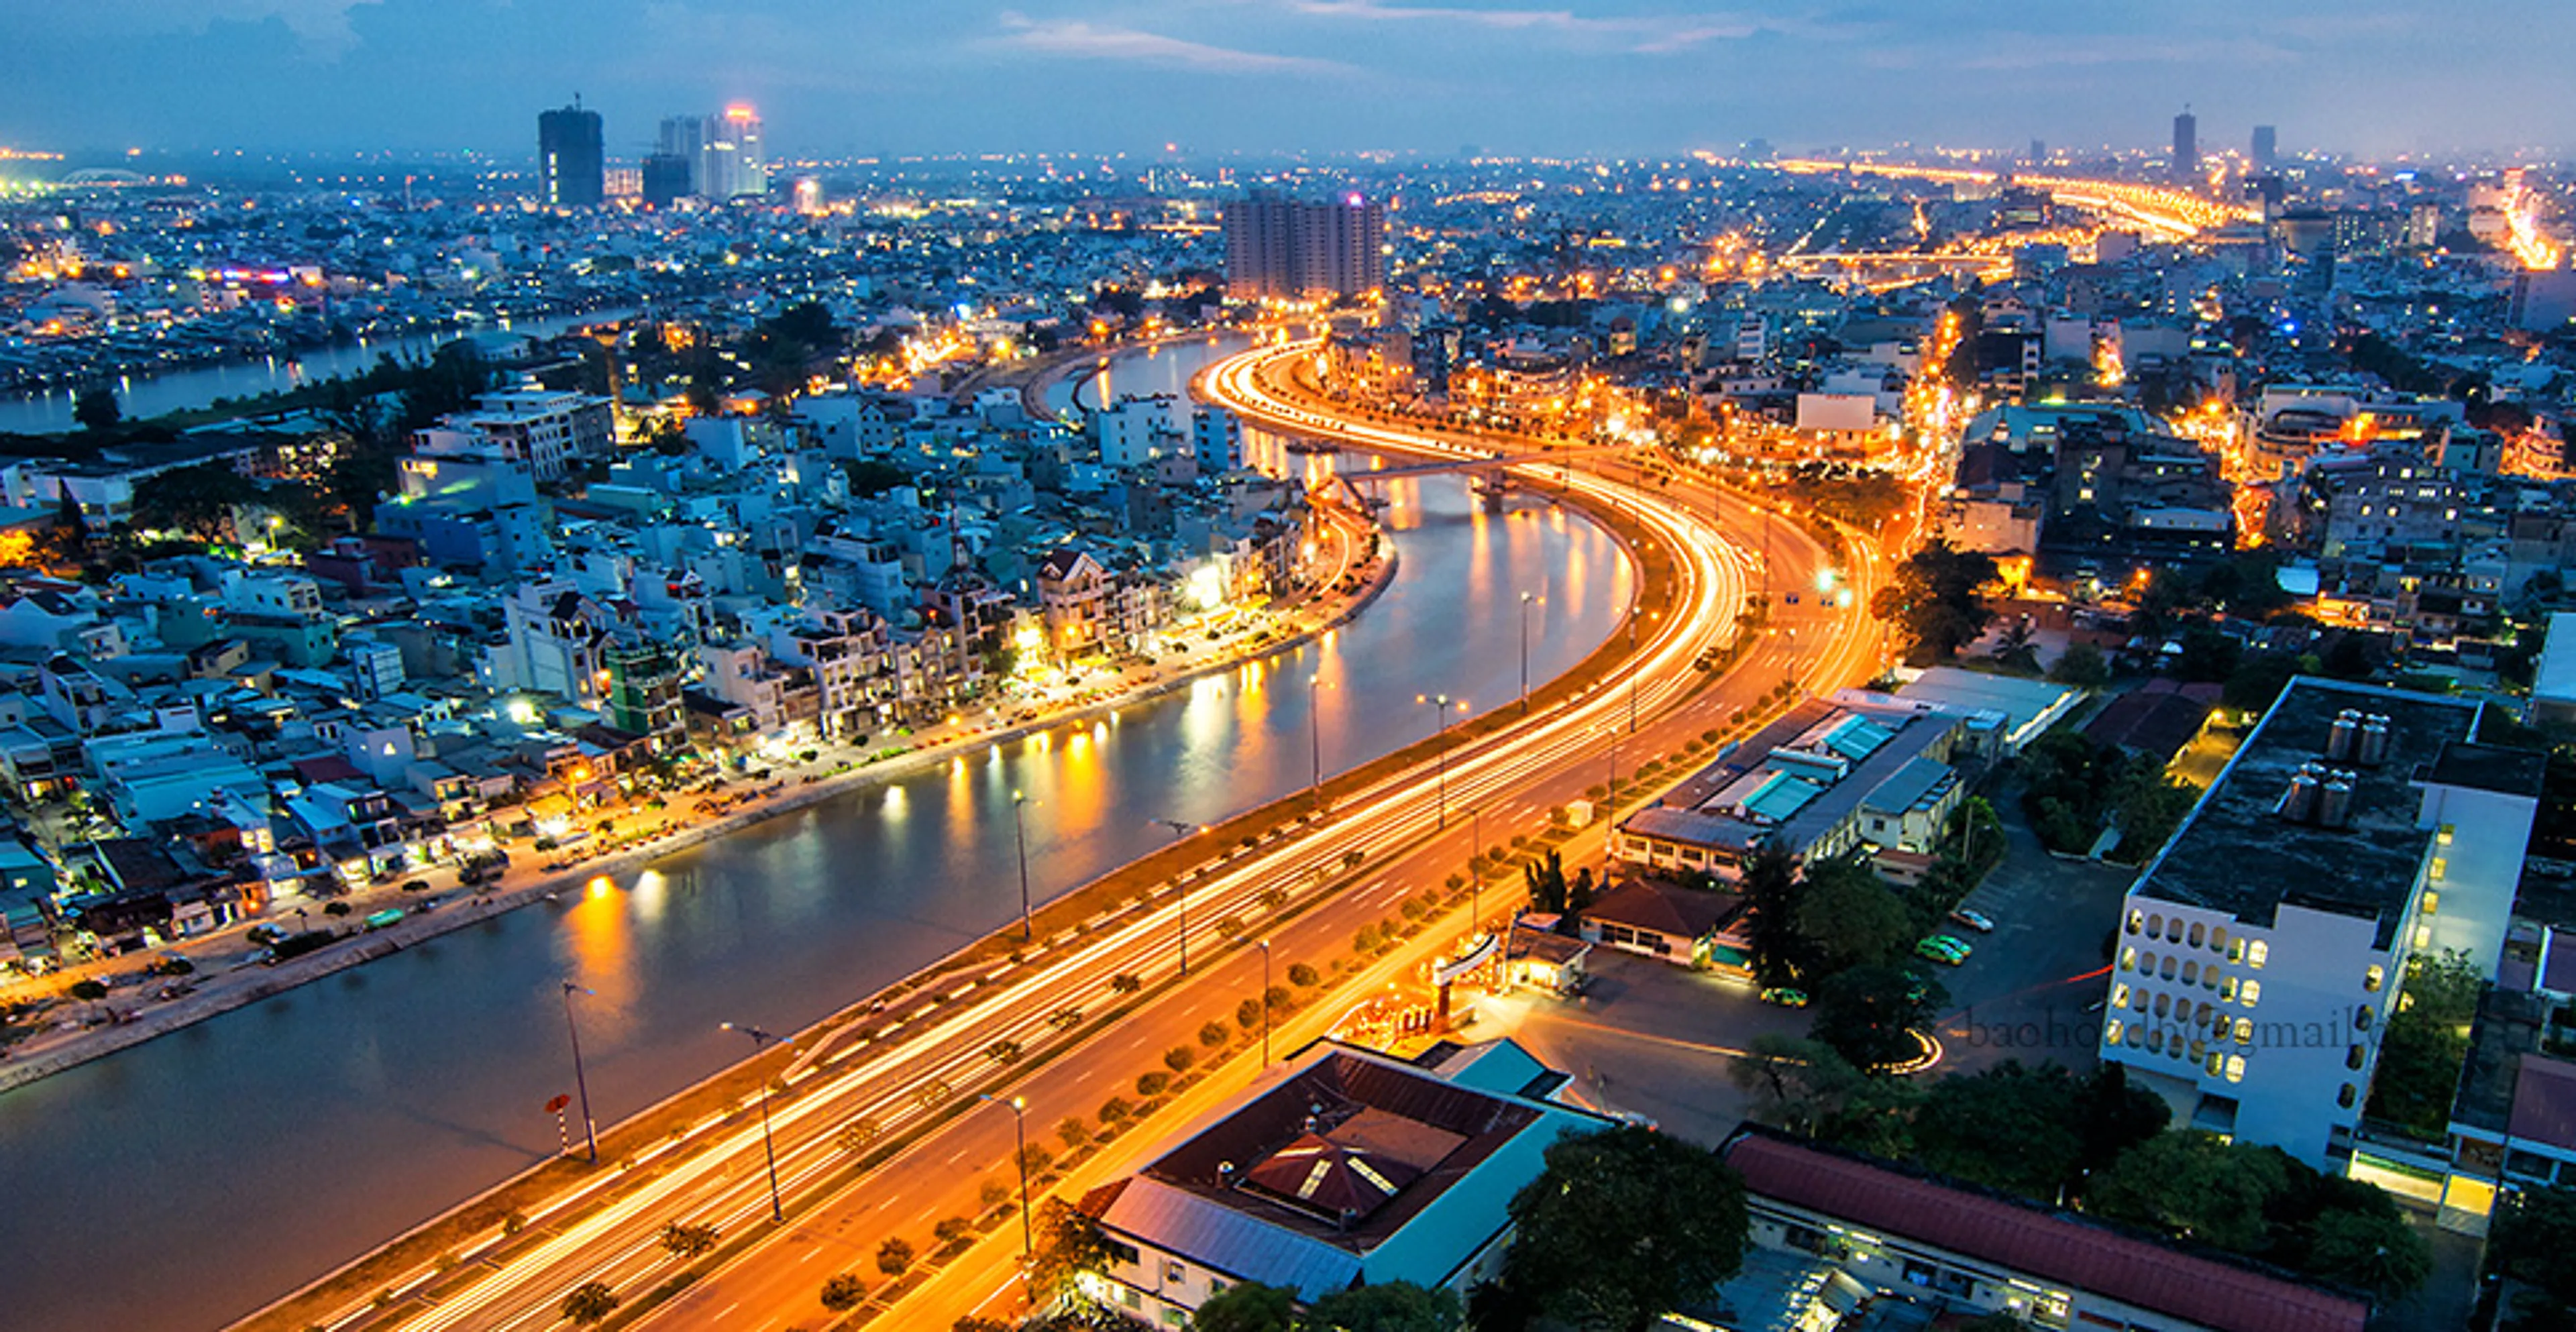 Khám phá 14 điểm chụp hình đẹp hút mắt tại Sài Gòn không thể bỏ qua